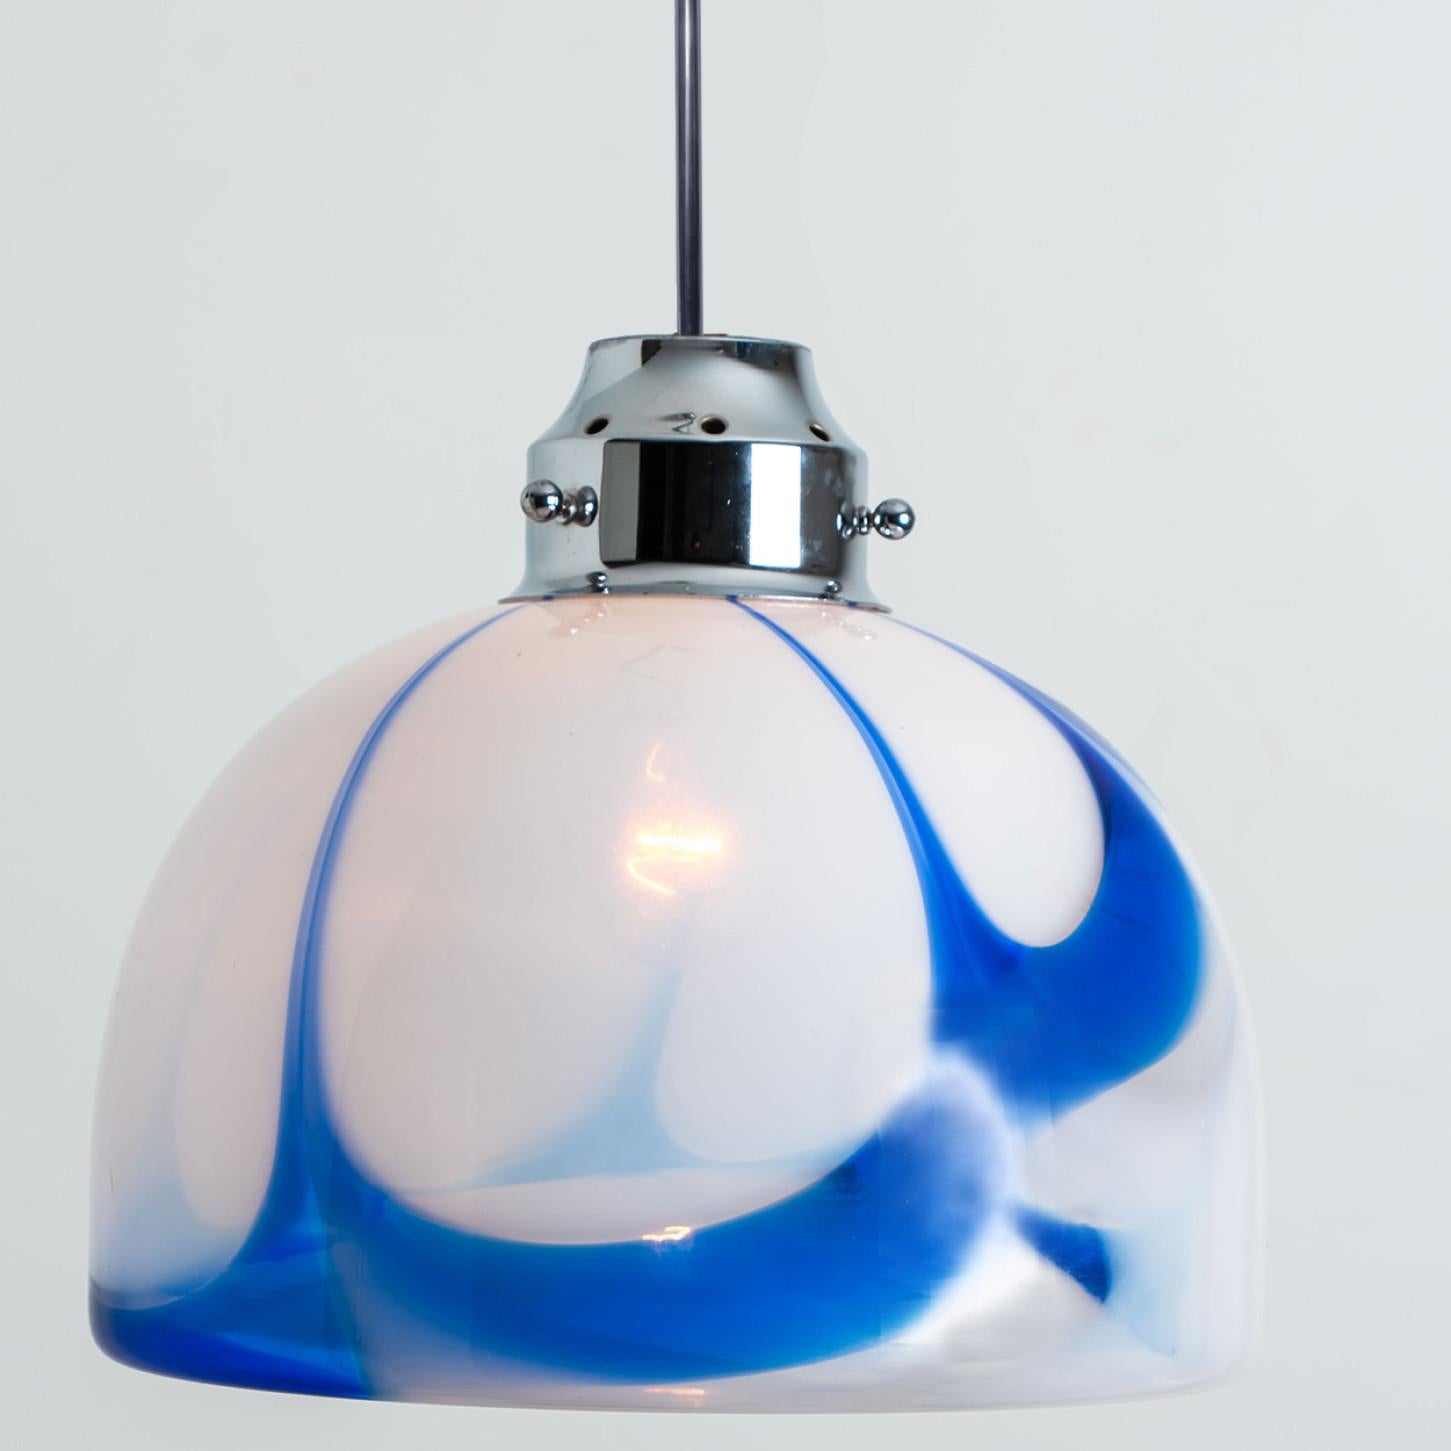 Magnifique suspension blanche et bleue en verre de Murano. Fabriqué en Italie, en Europe, vers 1970. Le verre italien de Murano est soufflé à la main.
Le verre blanc opaque présente un motif bleu marbré. Le luminaire est constitué d'une suspension